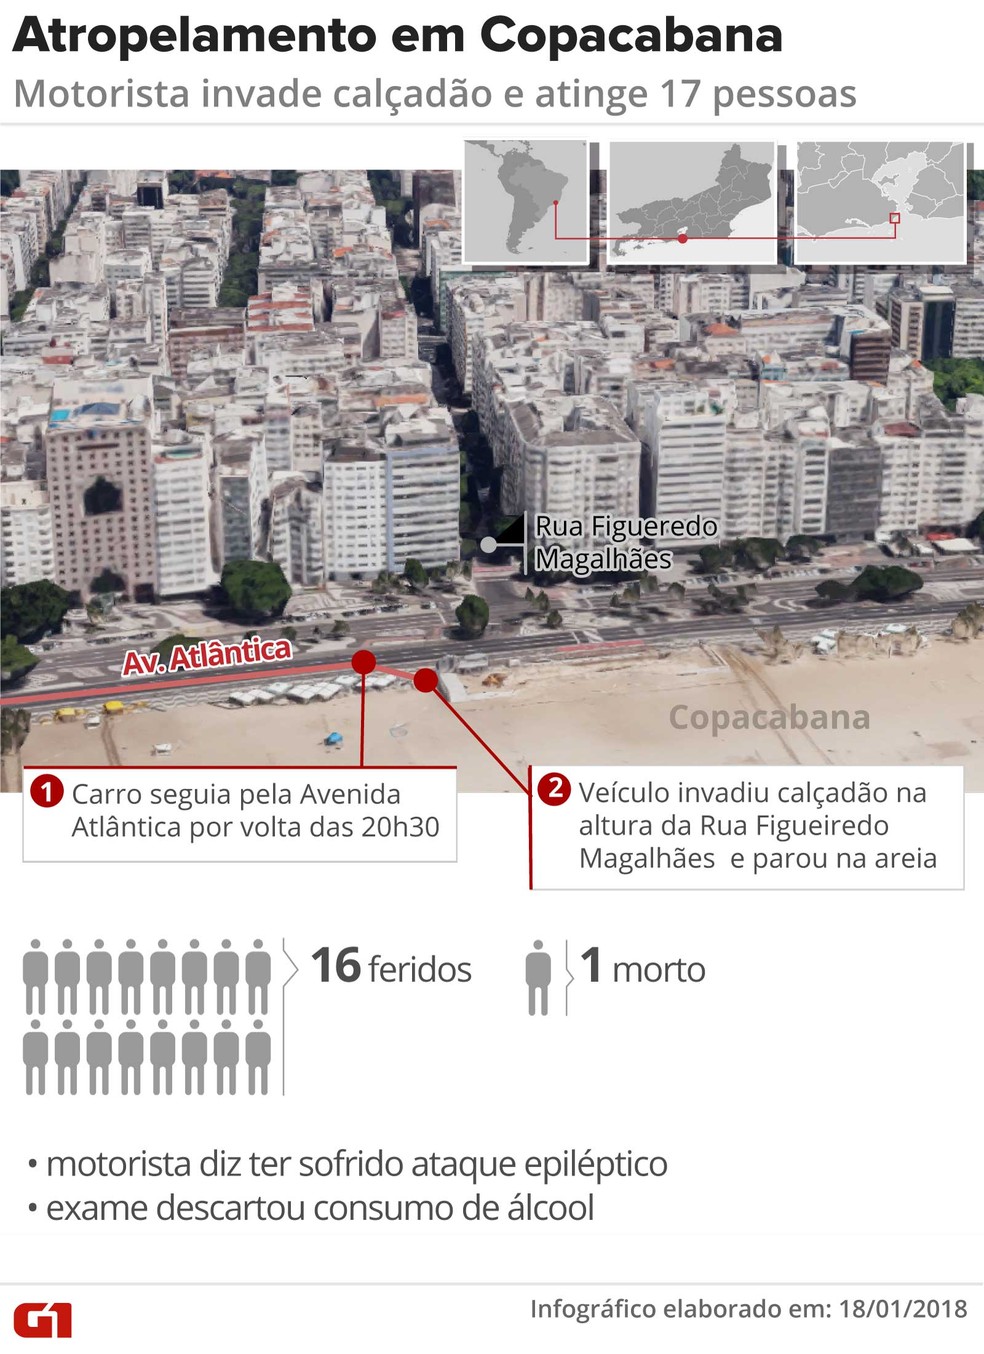 Motorista invadiu calçadão em Copacabana e atropelou 17 pessoas (Foto: Claudia Peixoto/Arte/G1)